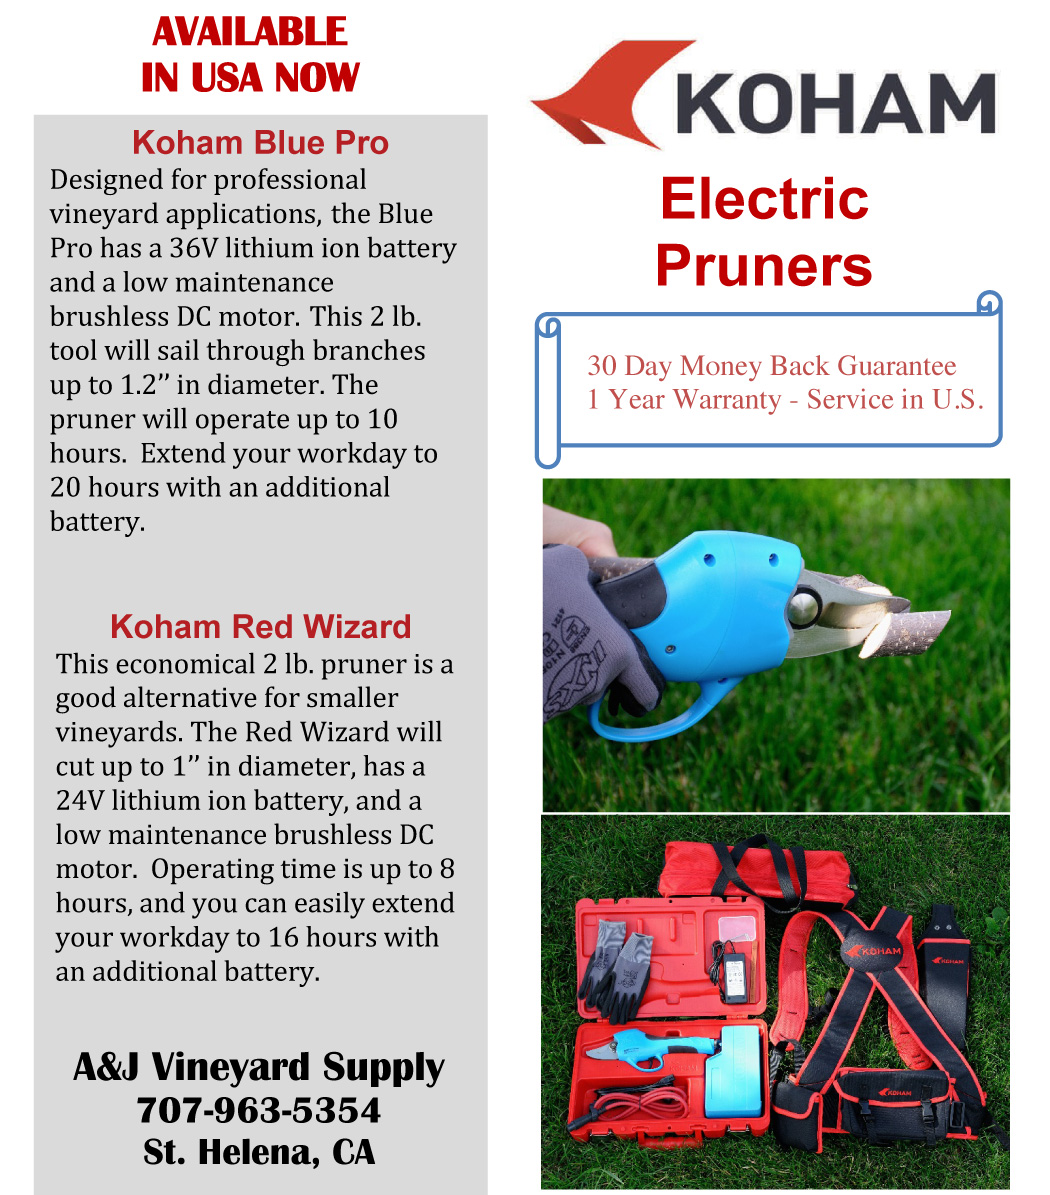 Koham Electronic Pruners Brochure